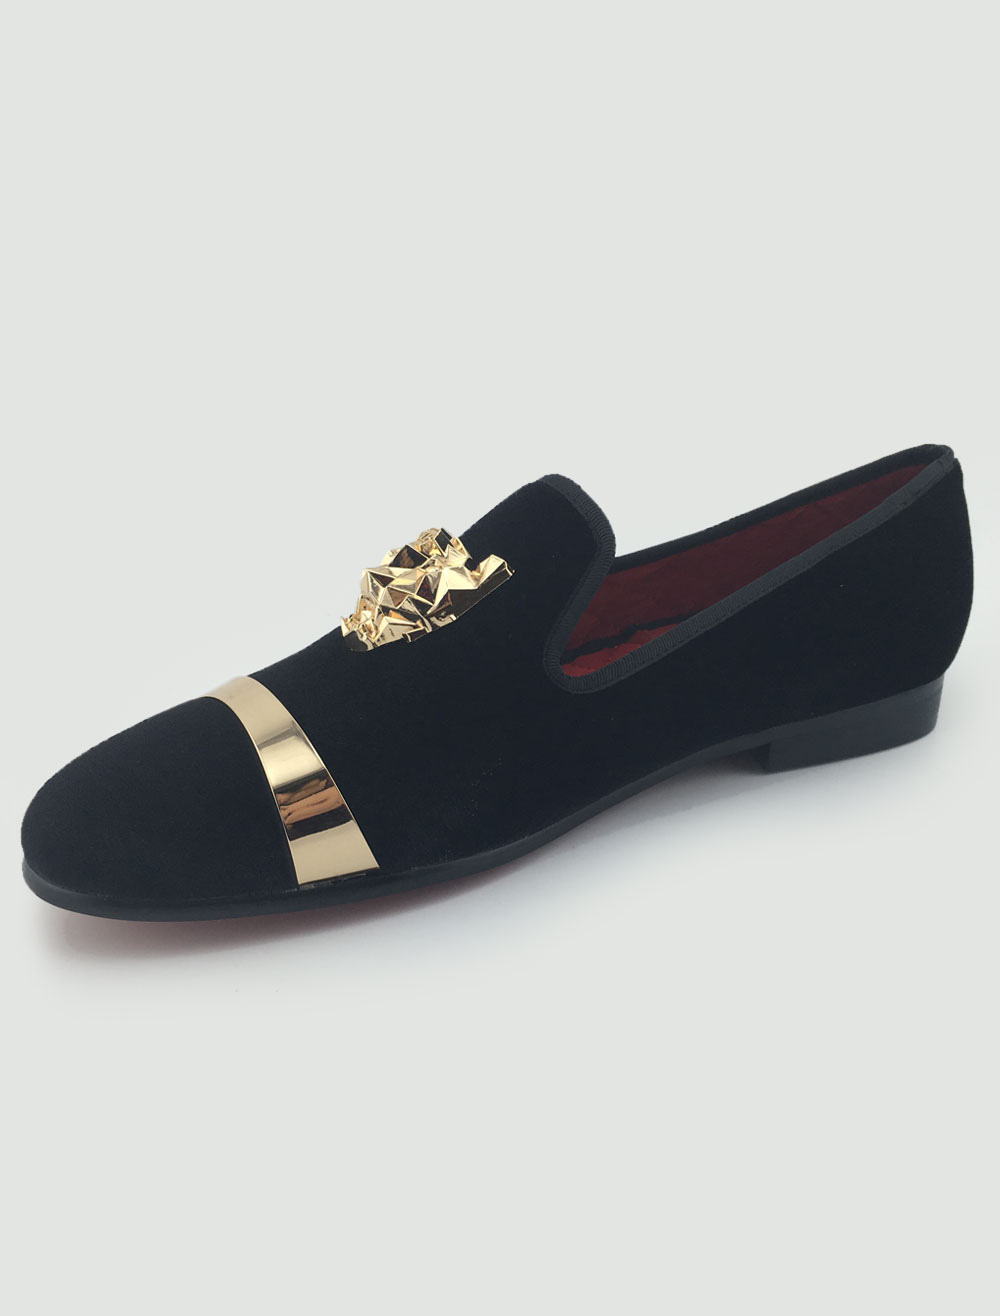 Mens Black Loafer Shoes Slip on Dress Shoes - Milanoo.com